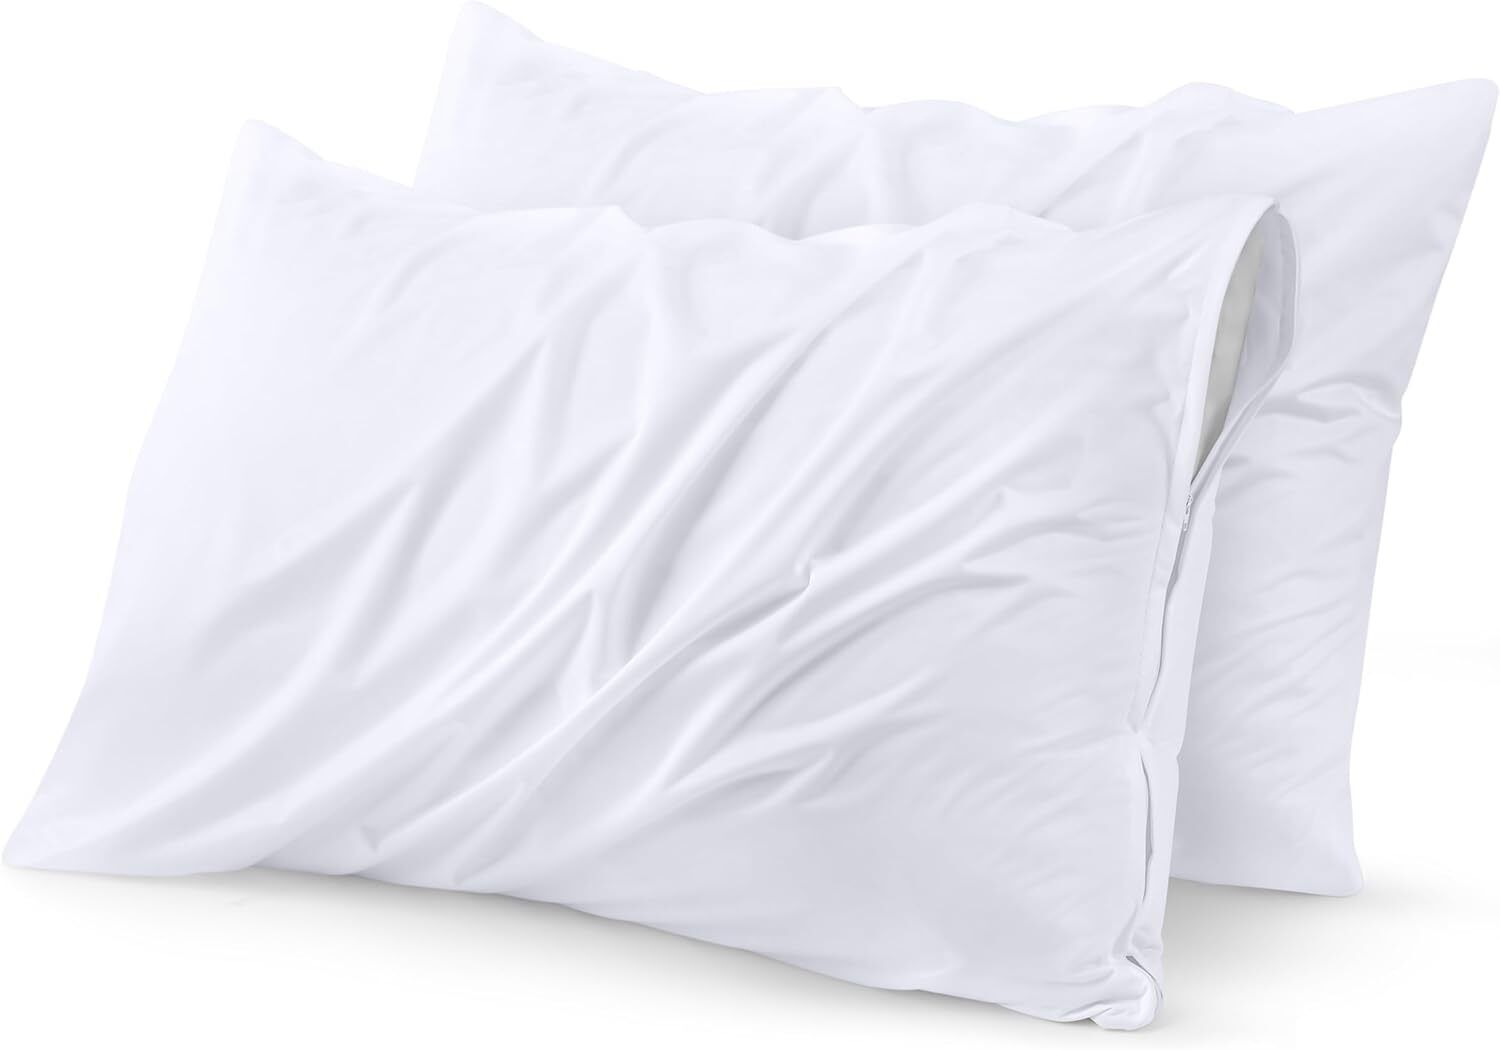 2 Pack Bed Bug Proof Zippered Pillow Encasement Waterproof Utopia Bedding